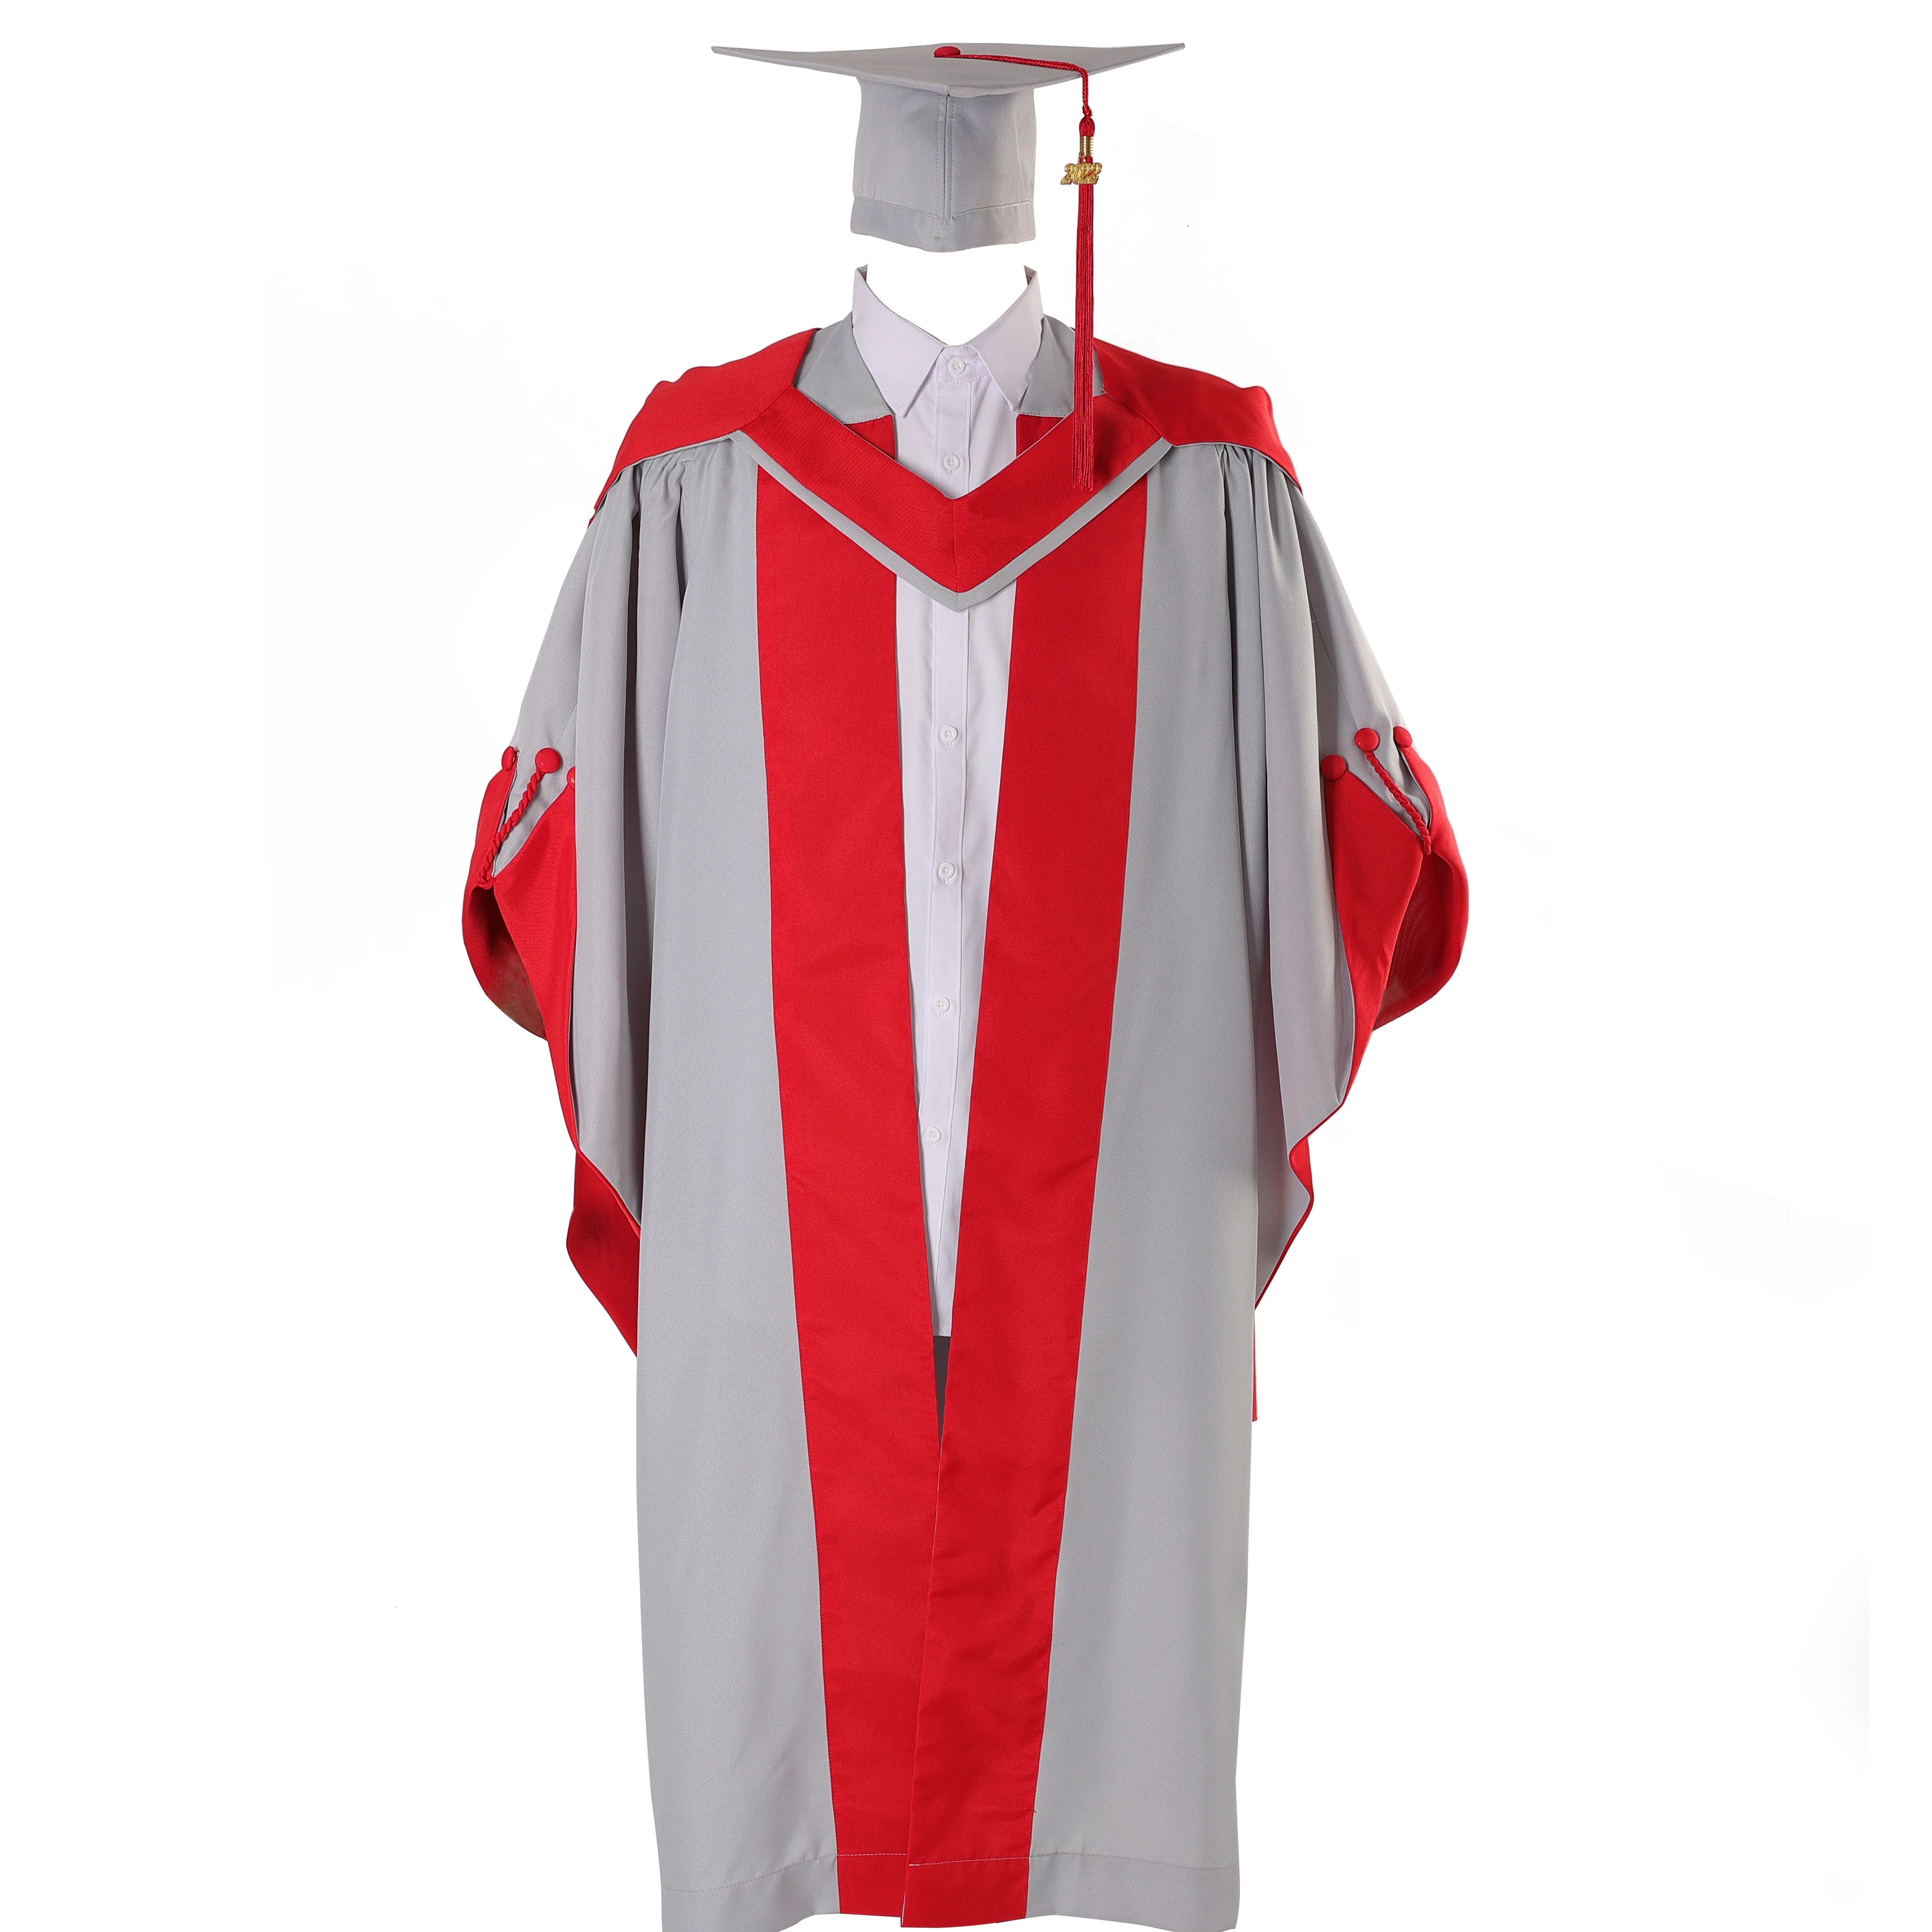 Kindergarten graduation cap and gown set. | eBay